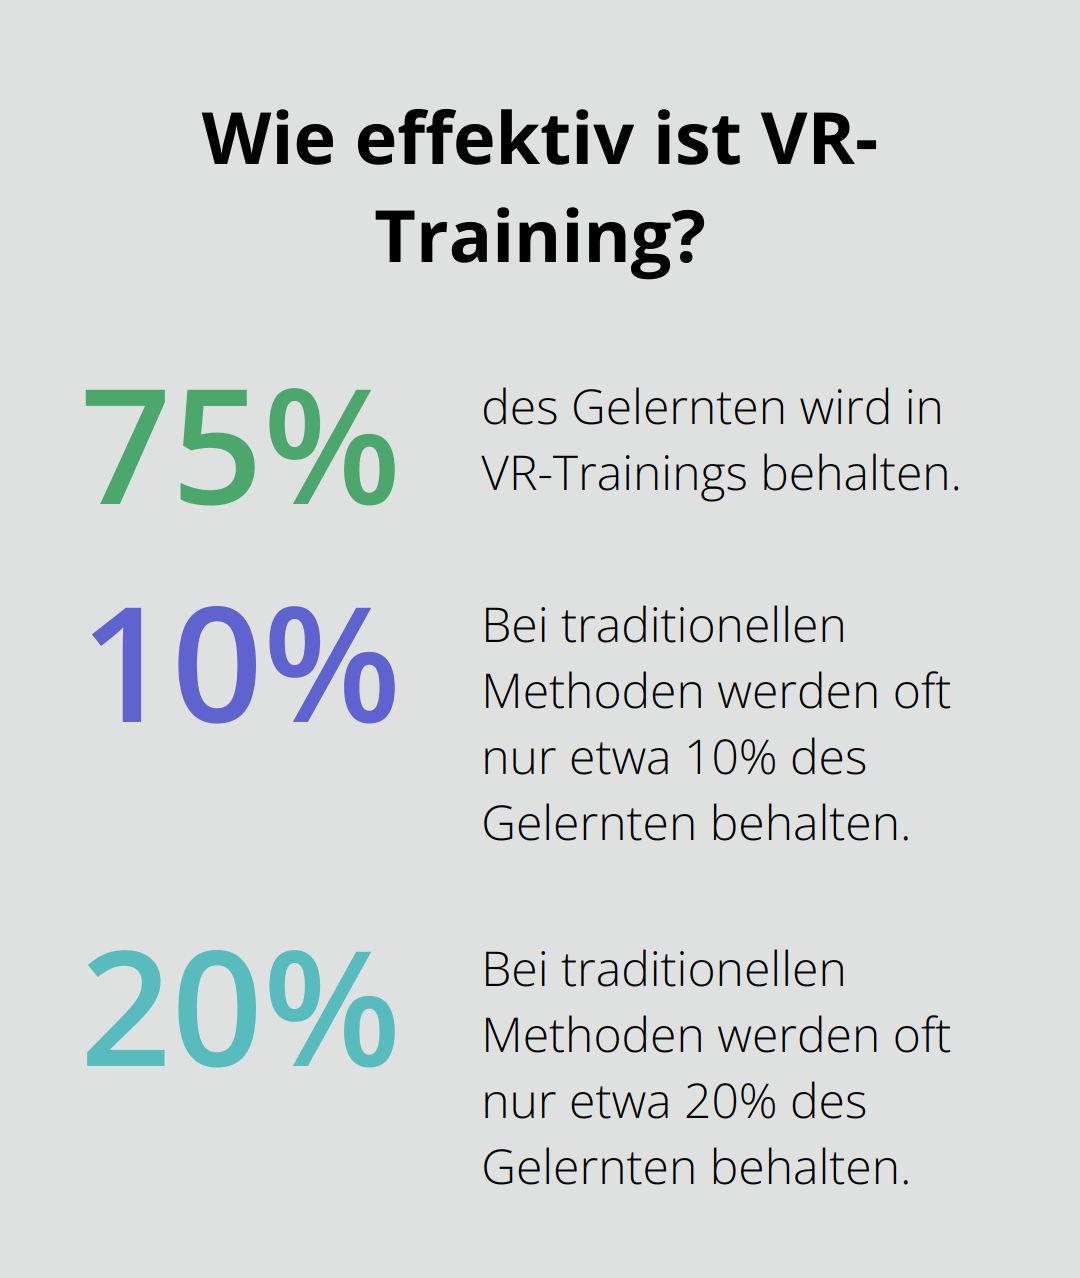 Fact - Wie effektiv ist VR-Training?